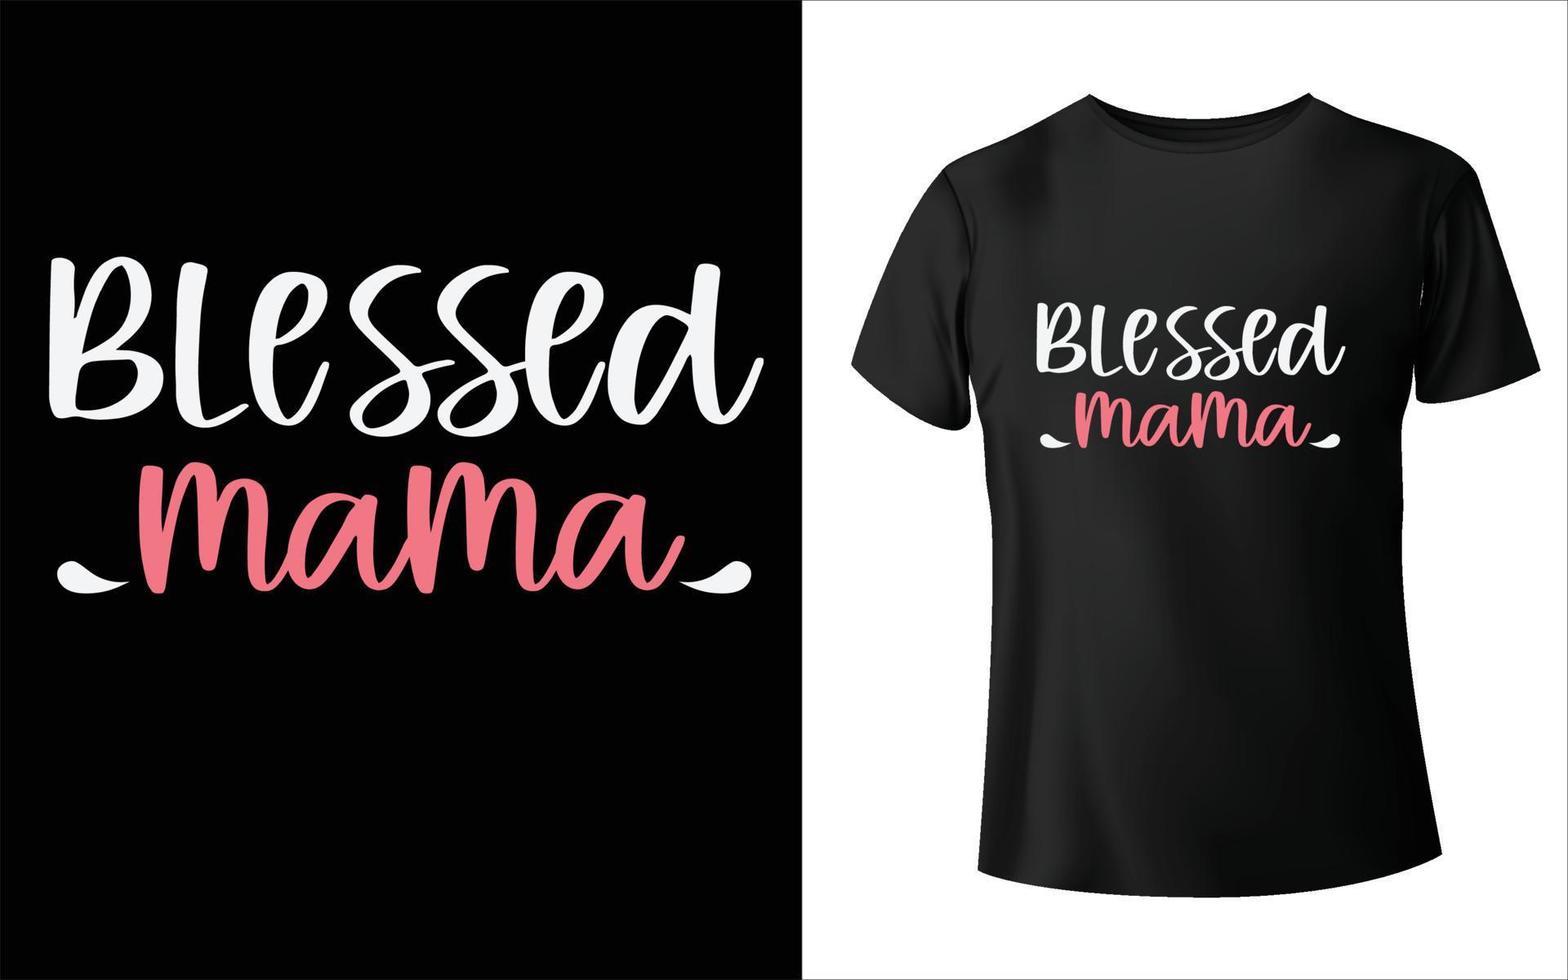 design t-shirt per la festa della mamma, vettore mamma, design t-shirt per la festa della mamma, vettore mamma,